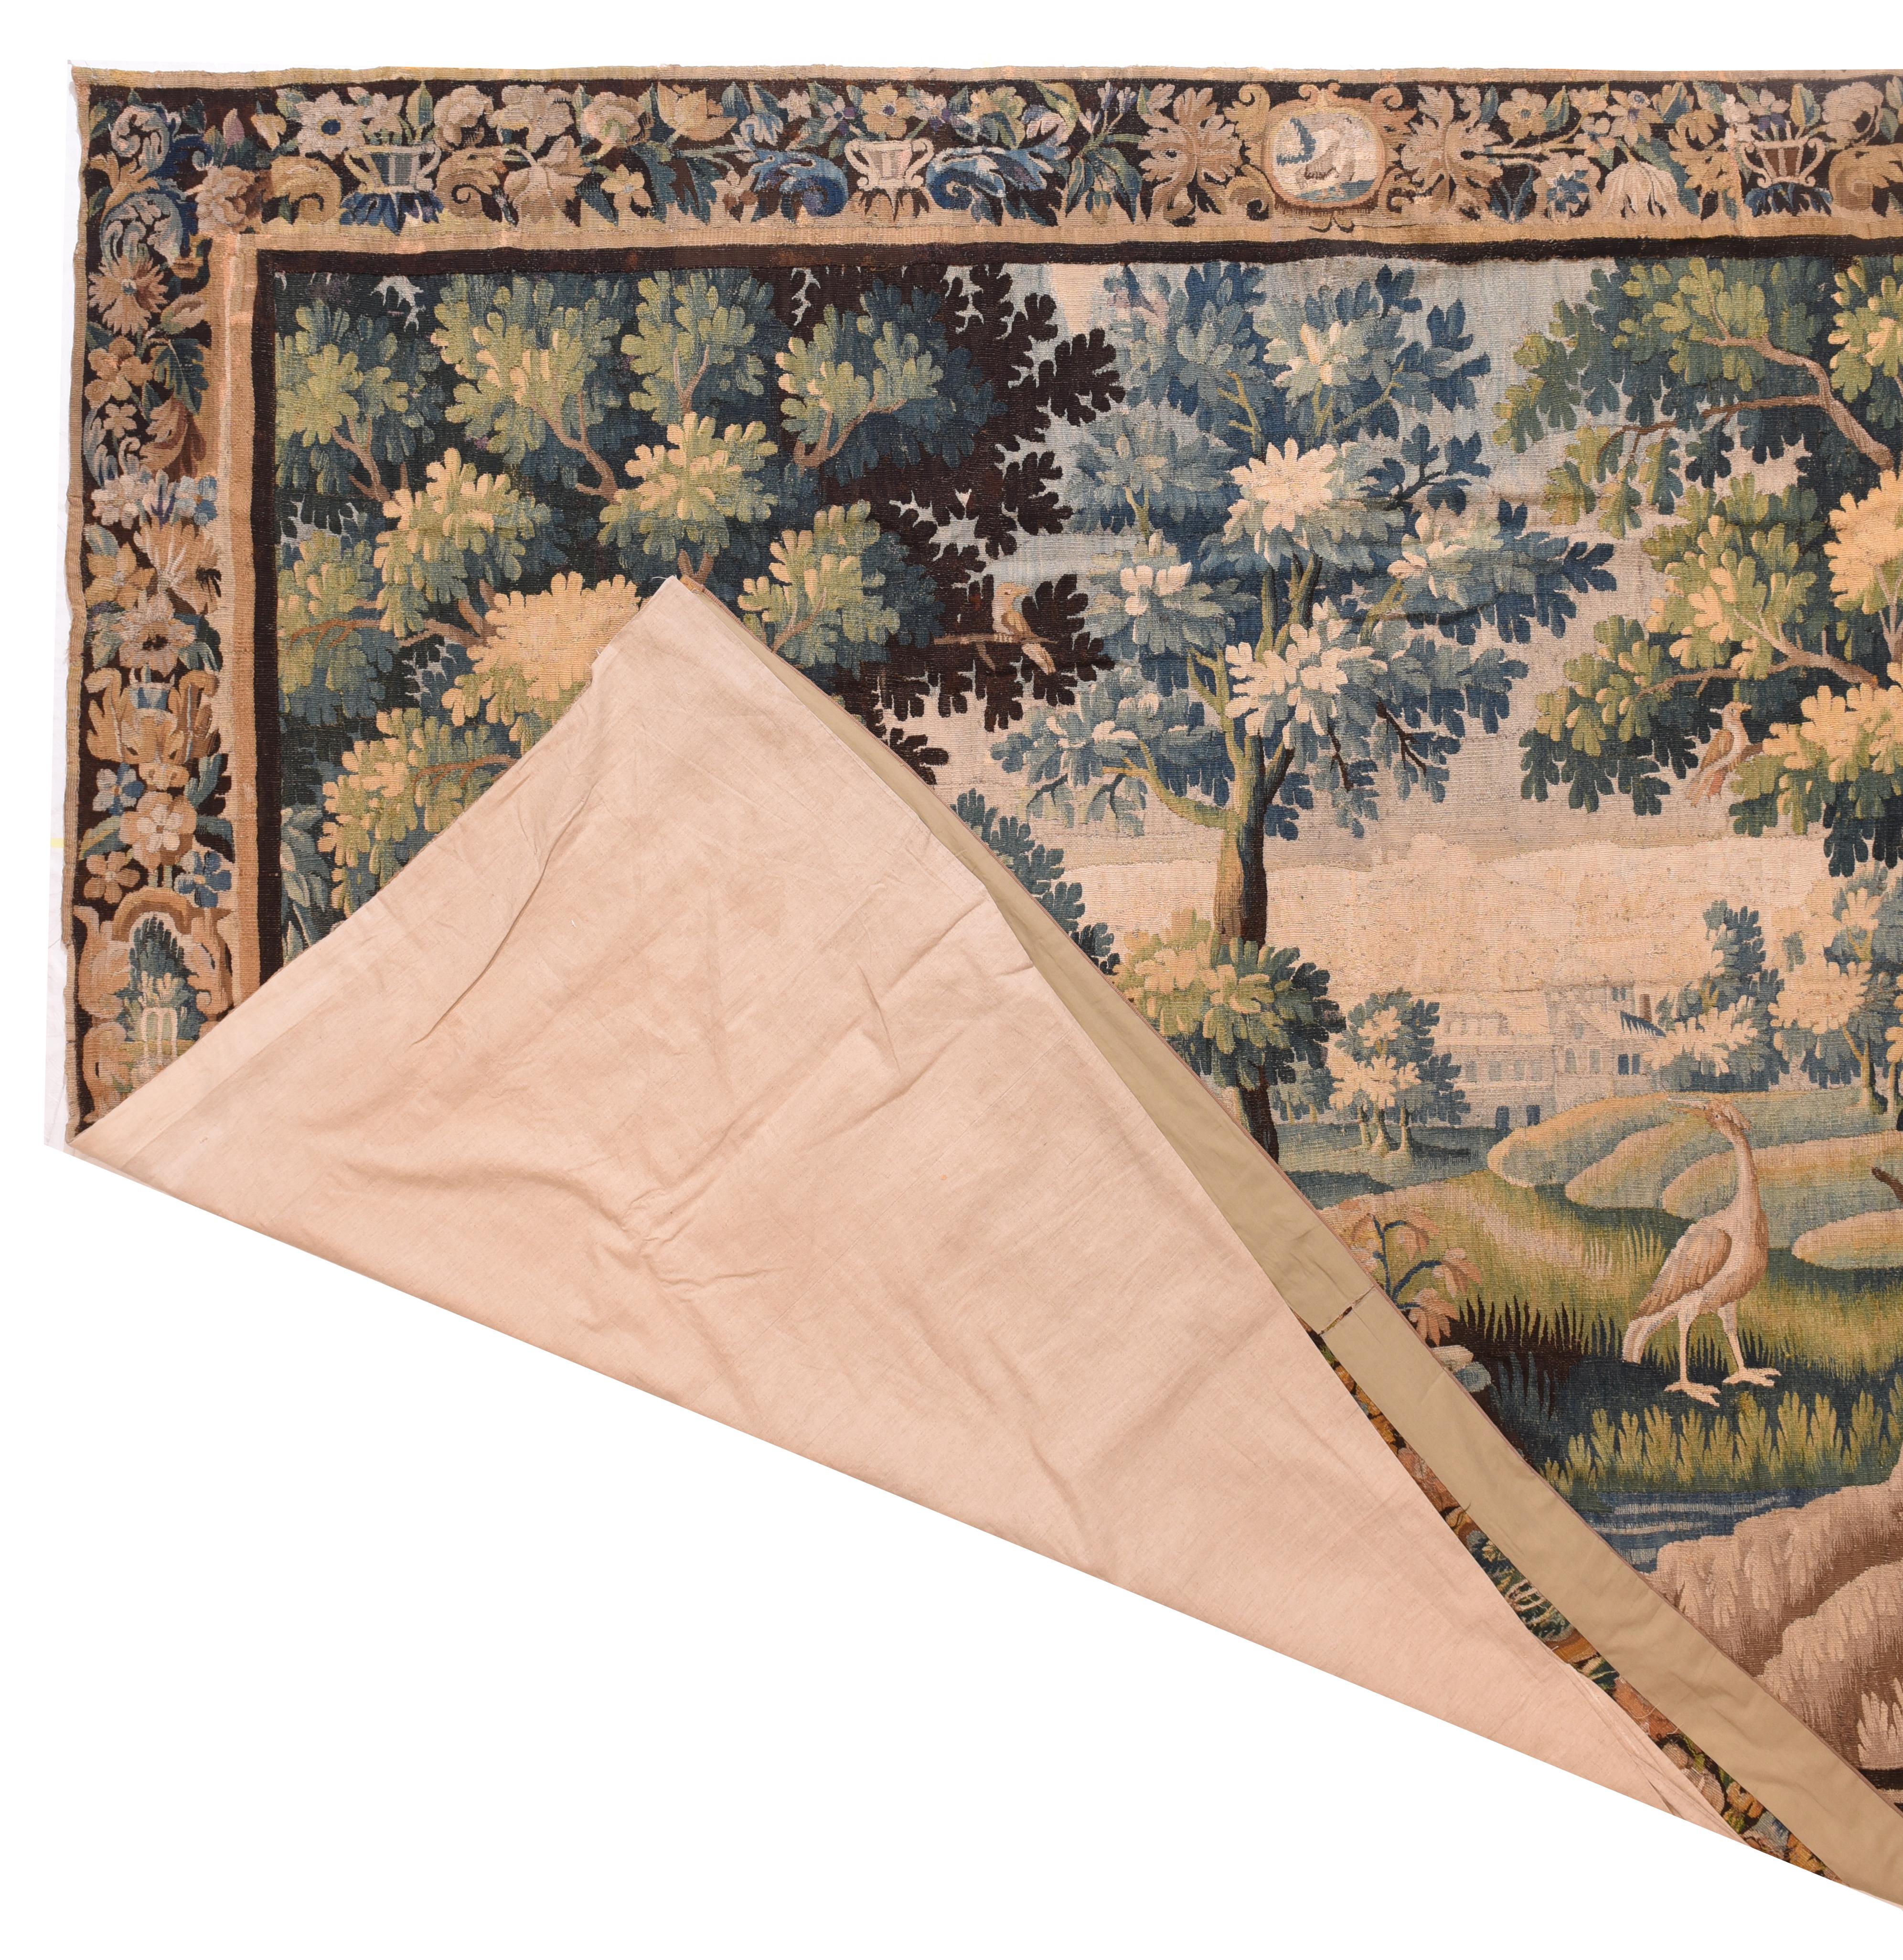 La tapisserie est une forme d'art textile, traditionnellement tissée à la main sur un métier à tisser. La tapisserie est un tissage face trame, dans lequel tous les fils de chaîne sont cachés dans l'ouvrage achevé, contrairement au tissage de tissu